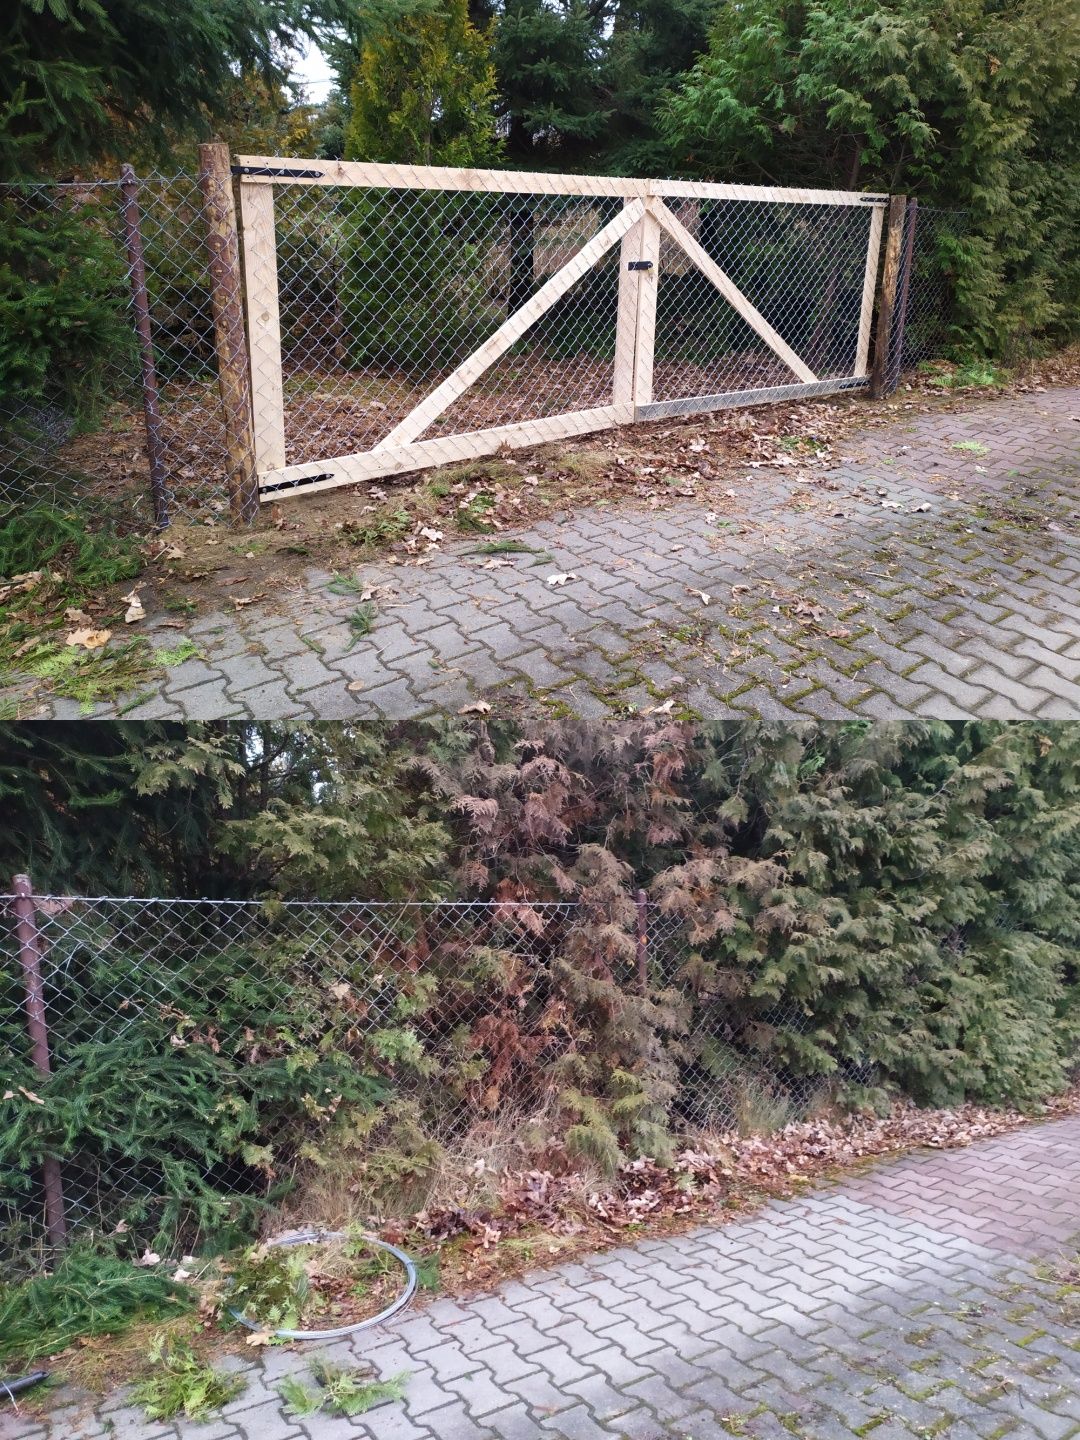 Brama na plac budowy z siatki leśnej, ogrodzenia tymczasowe